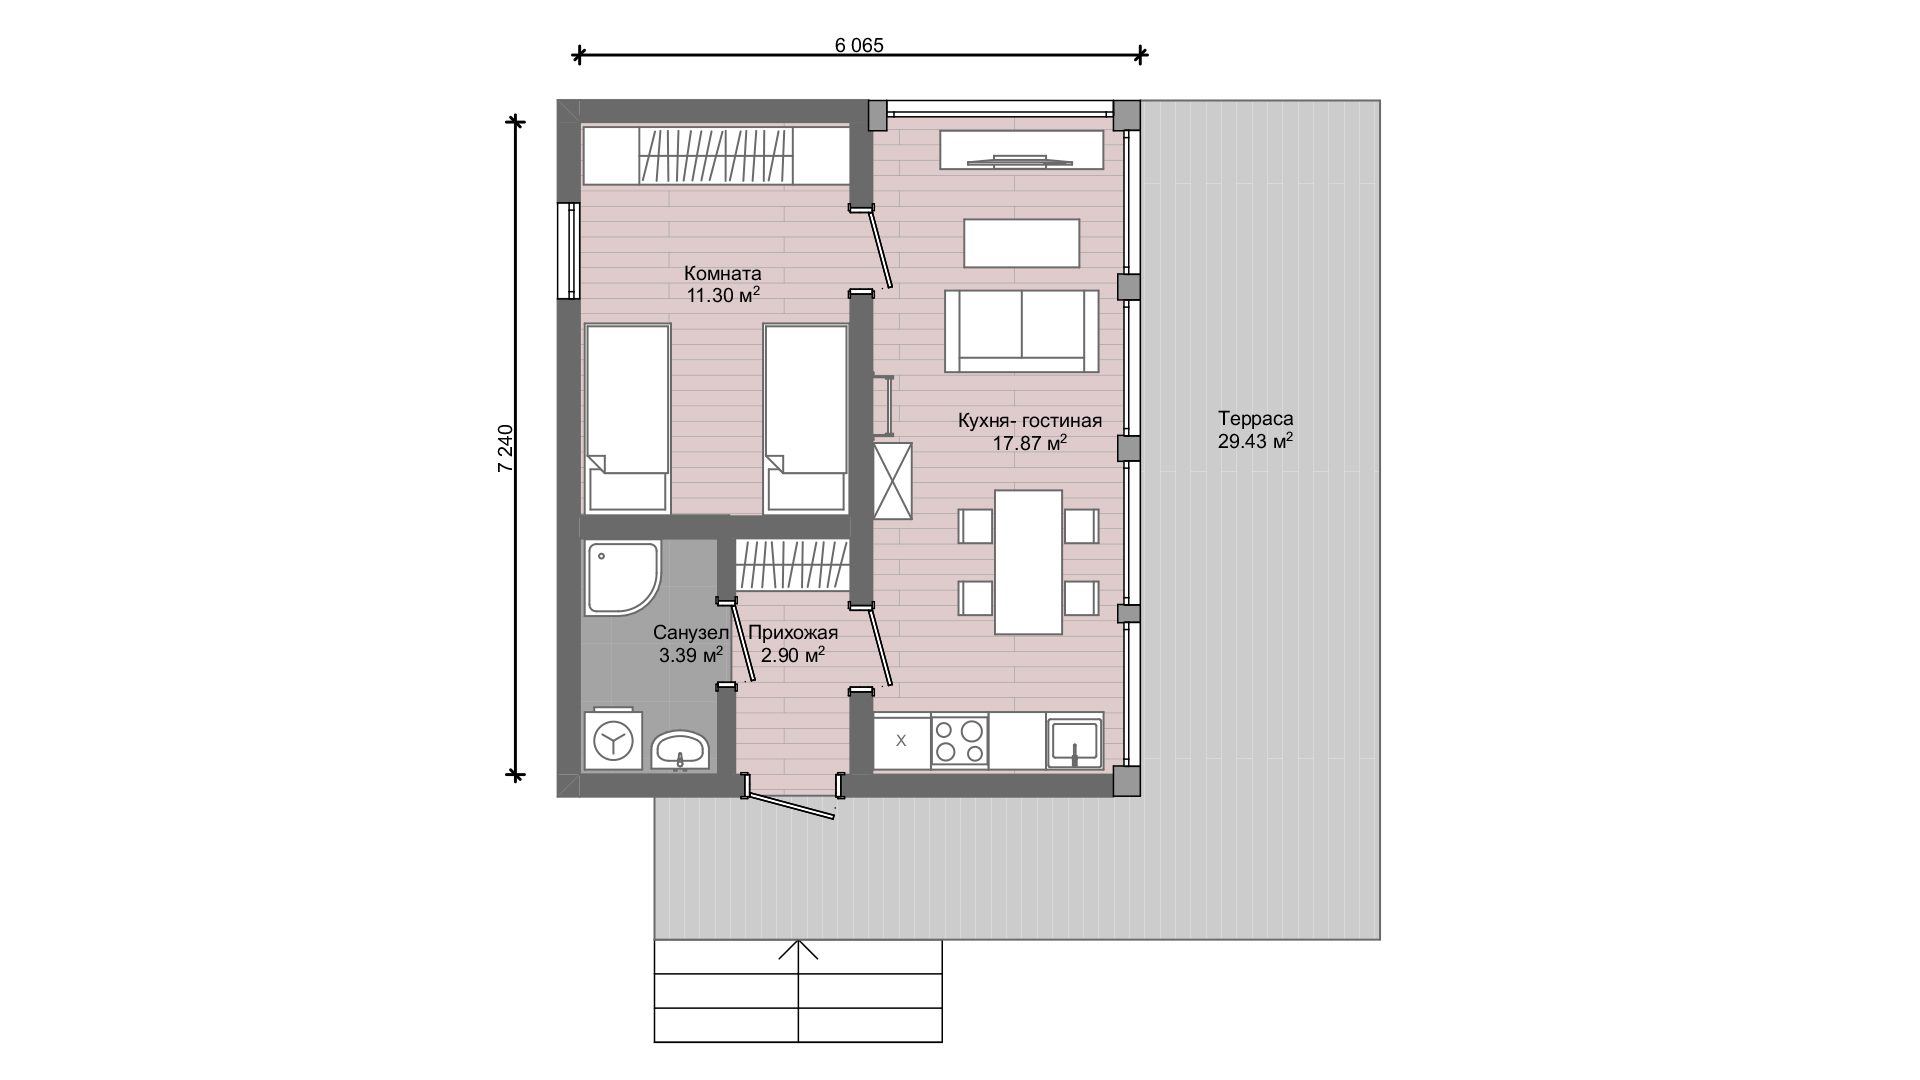 Проект каркасно-фахверкового дома ВАЙС 64 одноэтажный планировка